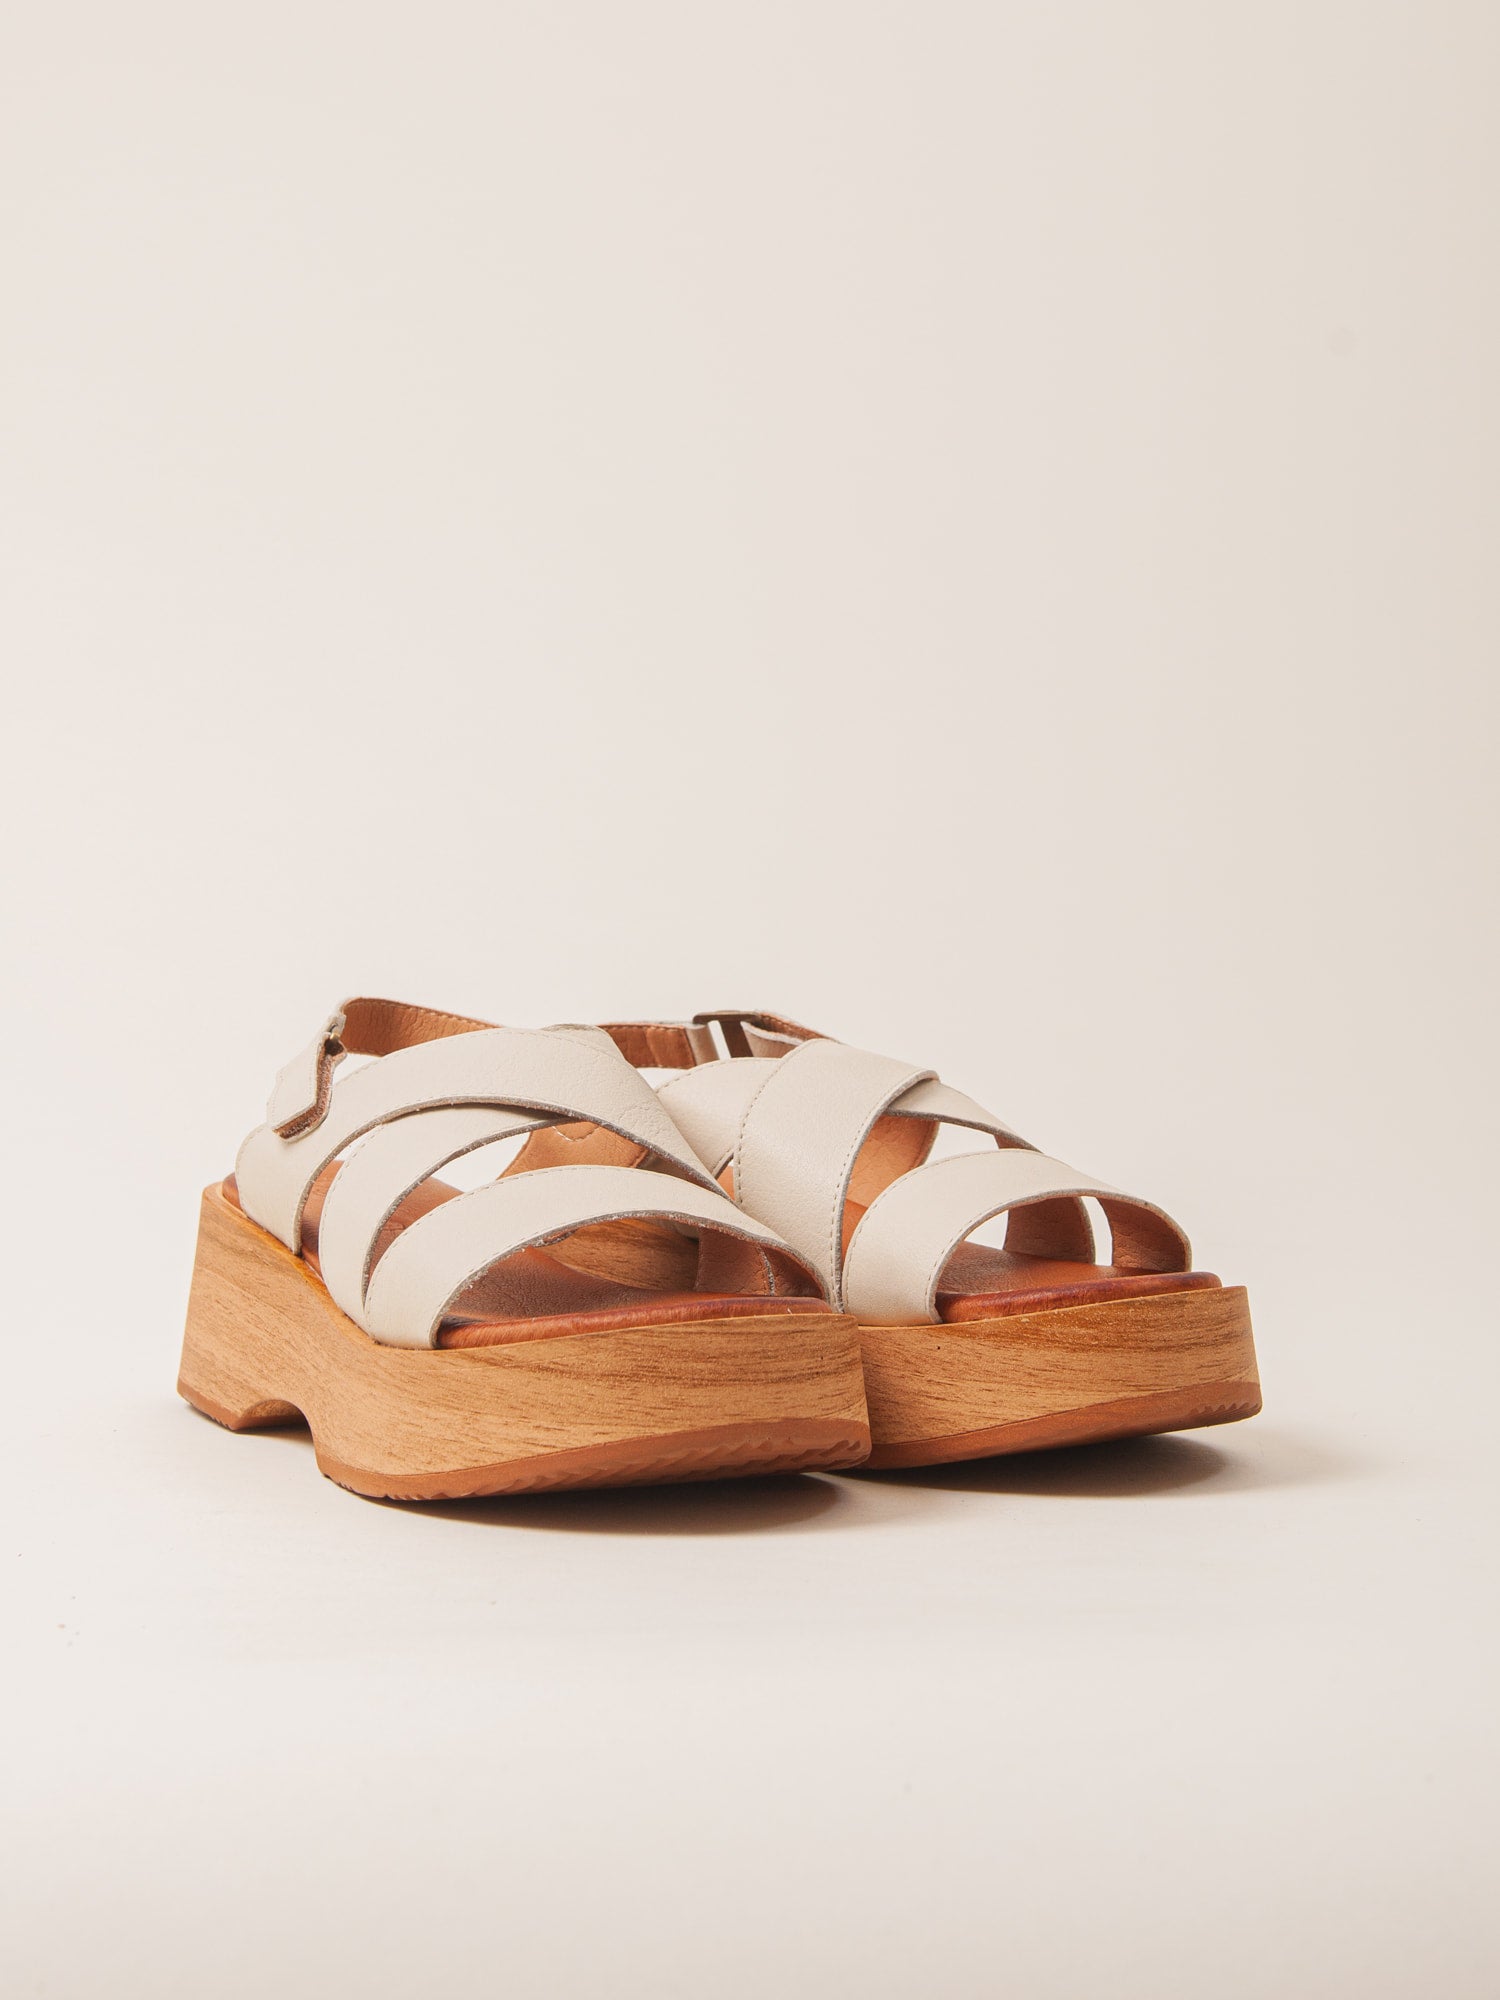 Sandalias blancas de plataforma cómodas y ligeras. Sandalias ideales para usar todo el día.